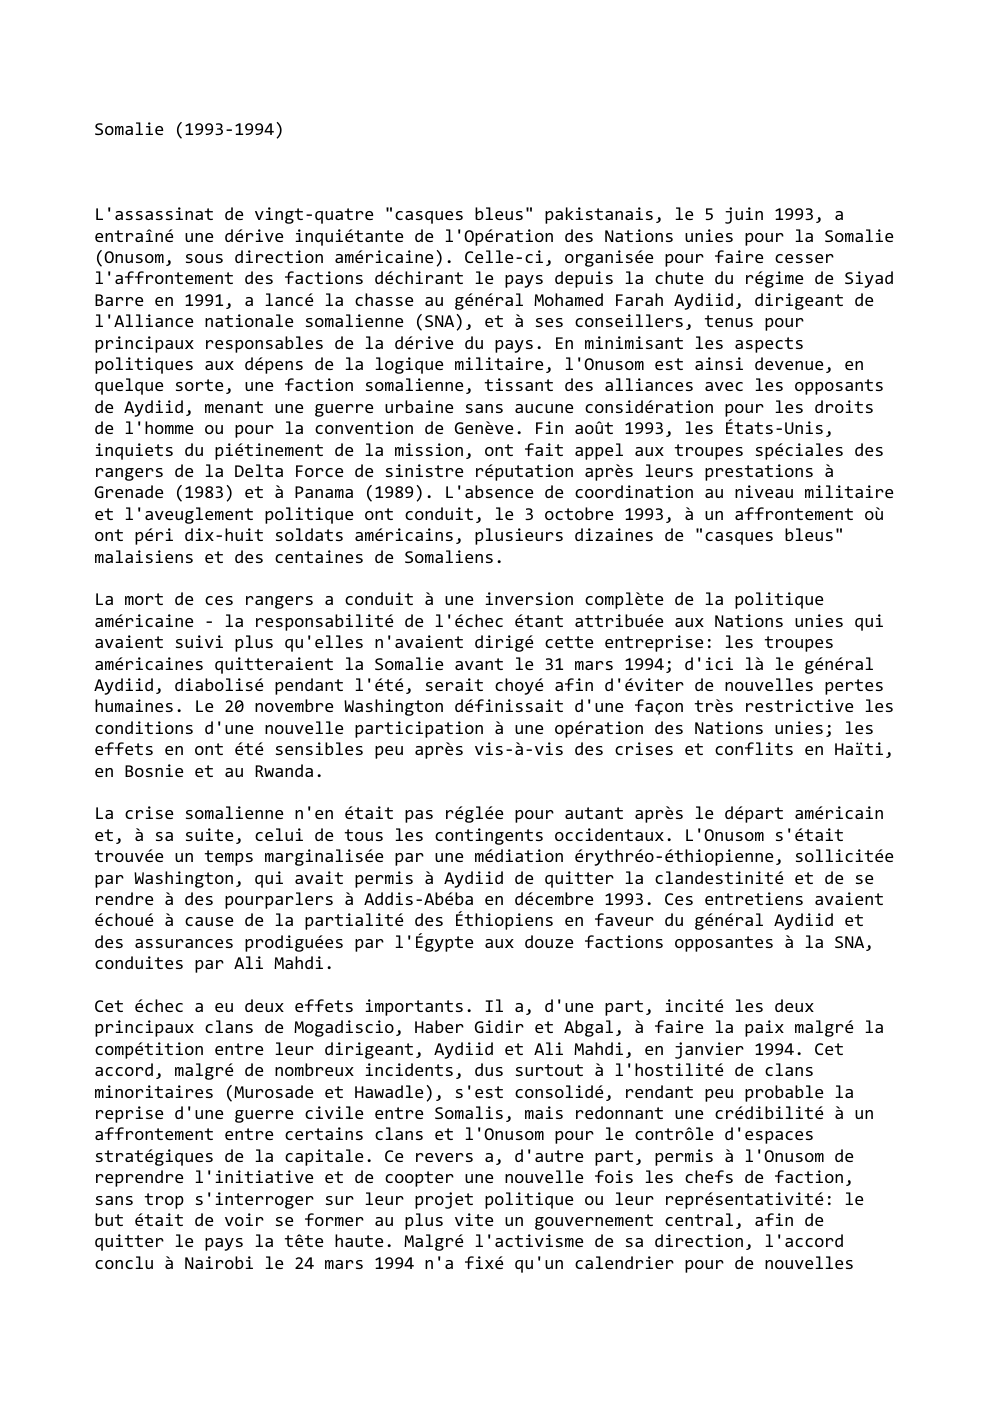 Prévisualisation du document Somalie (1993-1994)

L'assassinat de vingt-quatre "casques bleus" pakistanais, le 5 juin 1993, a
entraîné une dérive inquiétante de l'Opération des...